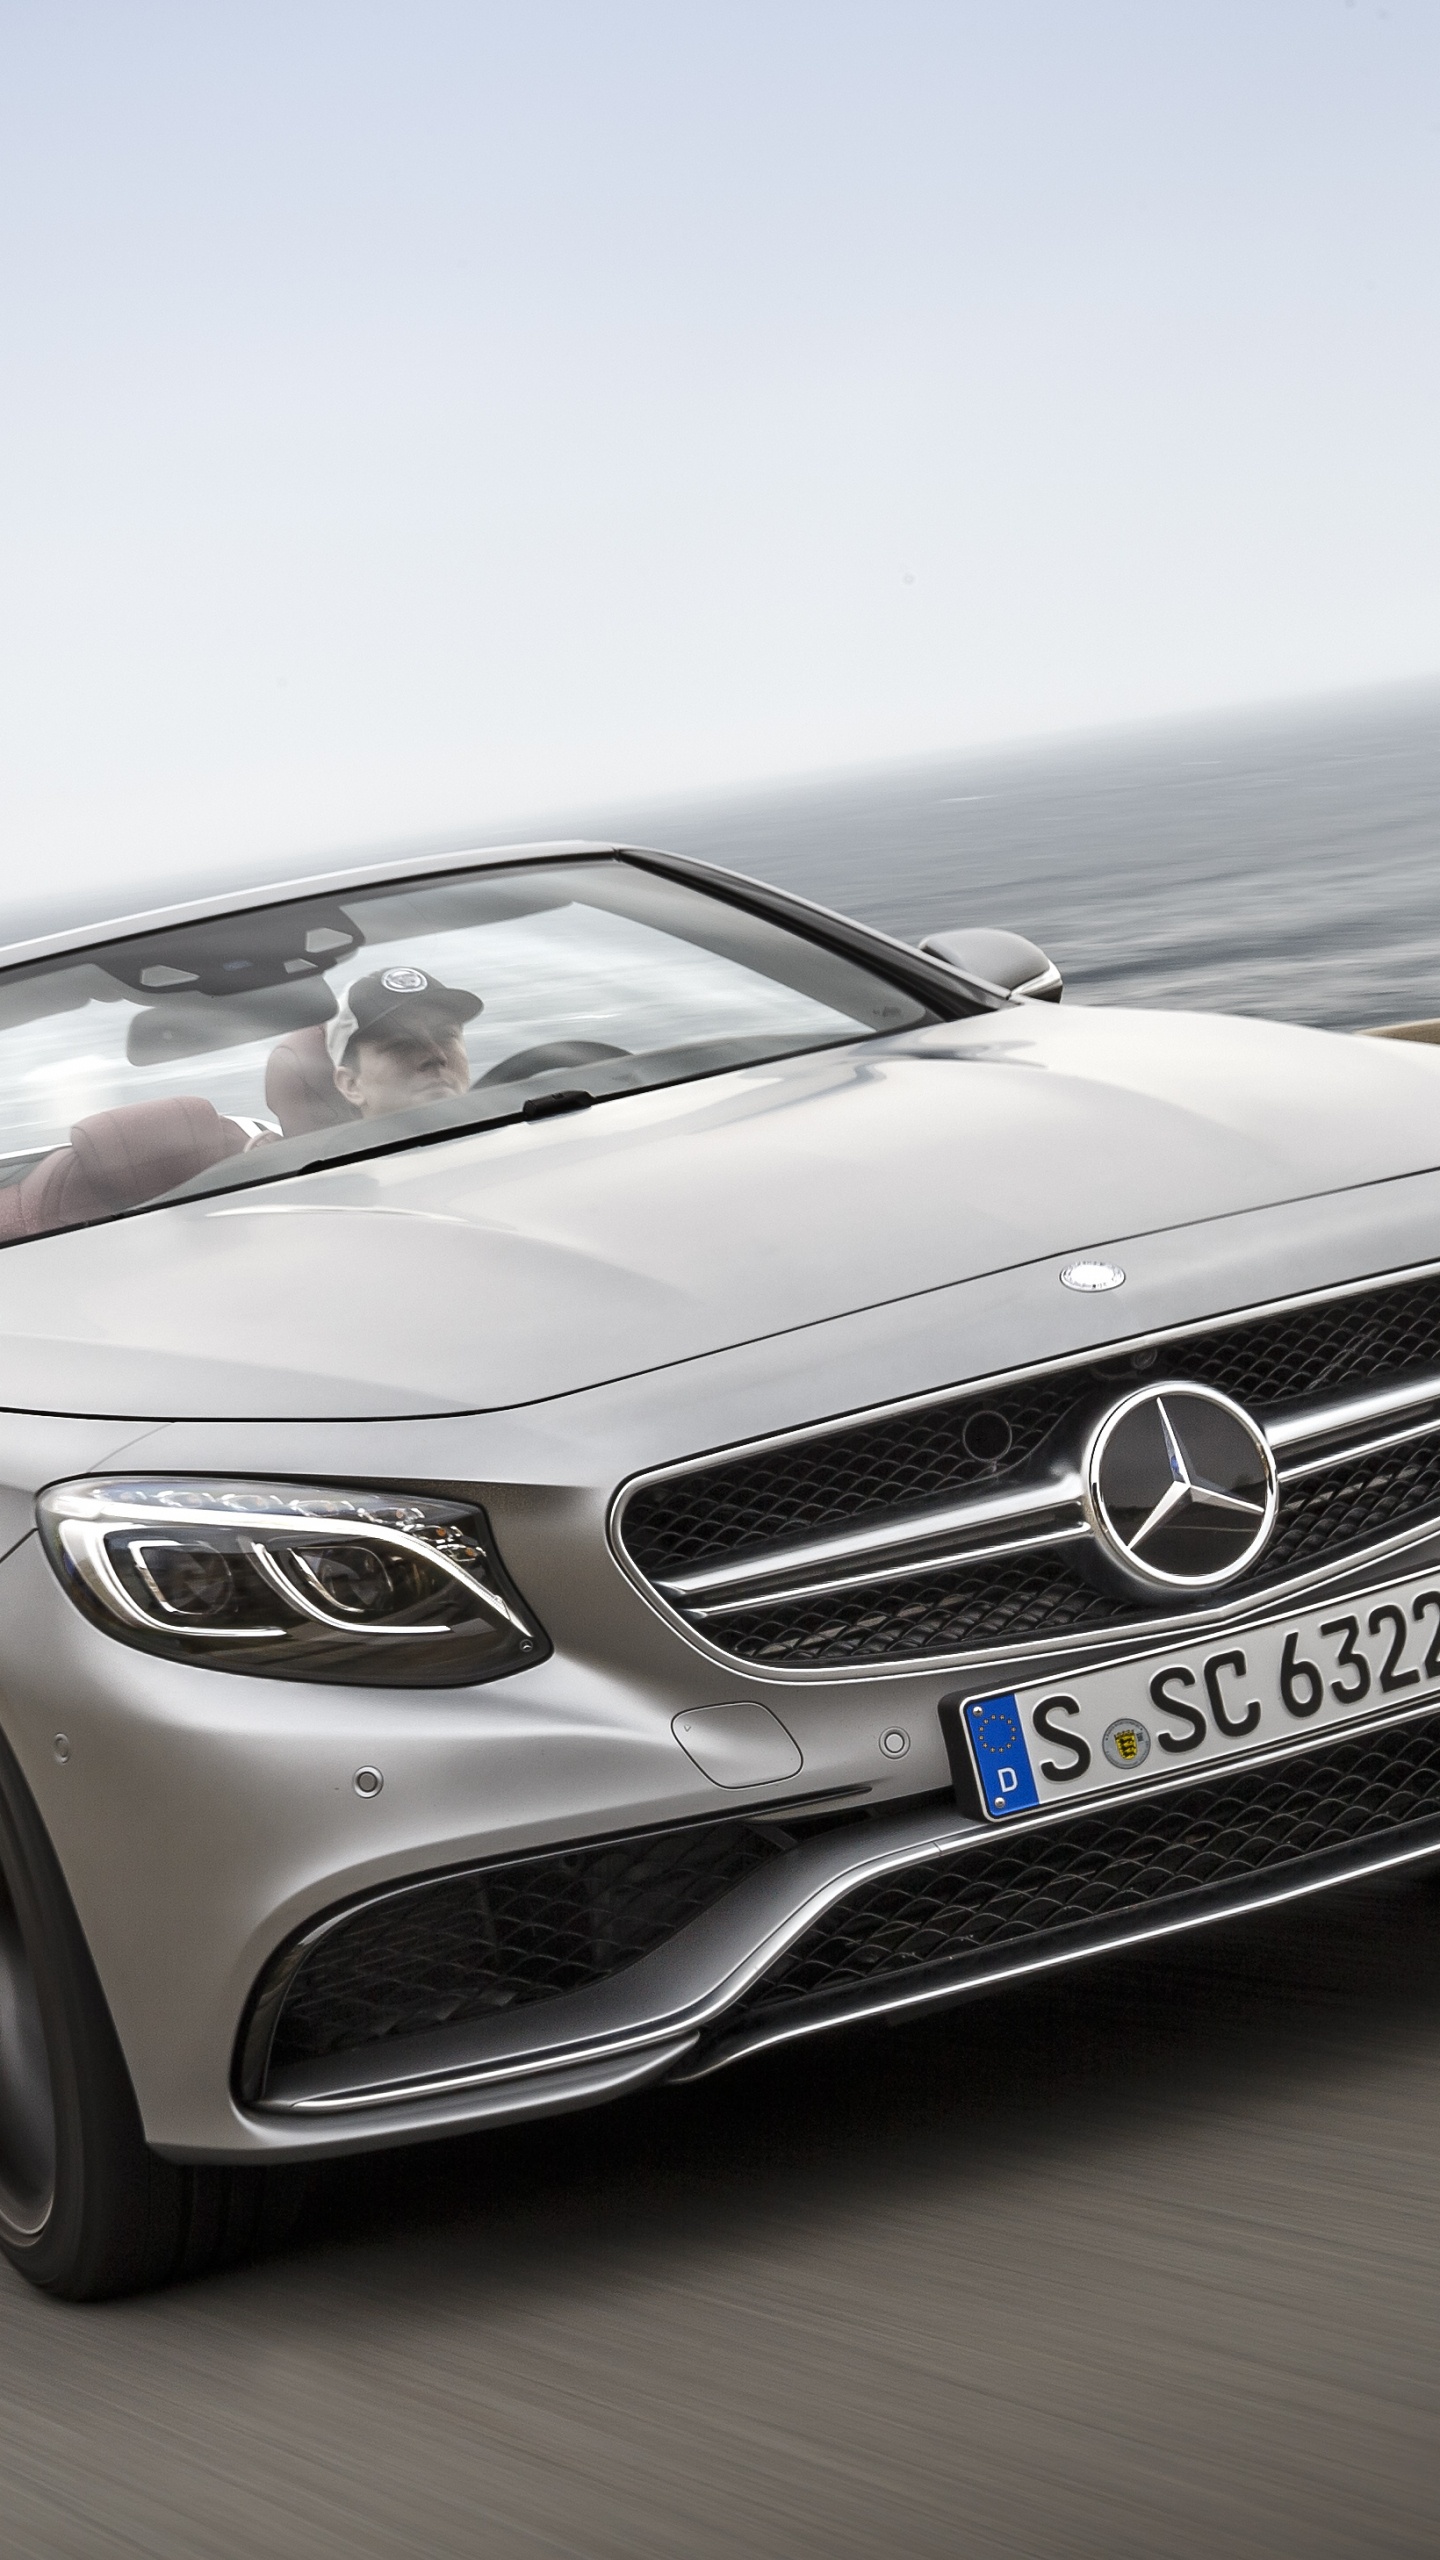 Mercedes Benz Coupé Convertible Gris en la Carretera Durante el Día. Wallpaper in 1440x2560 Resolution